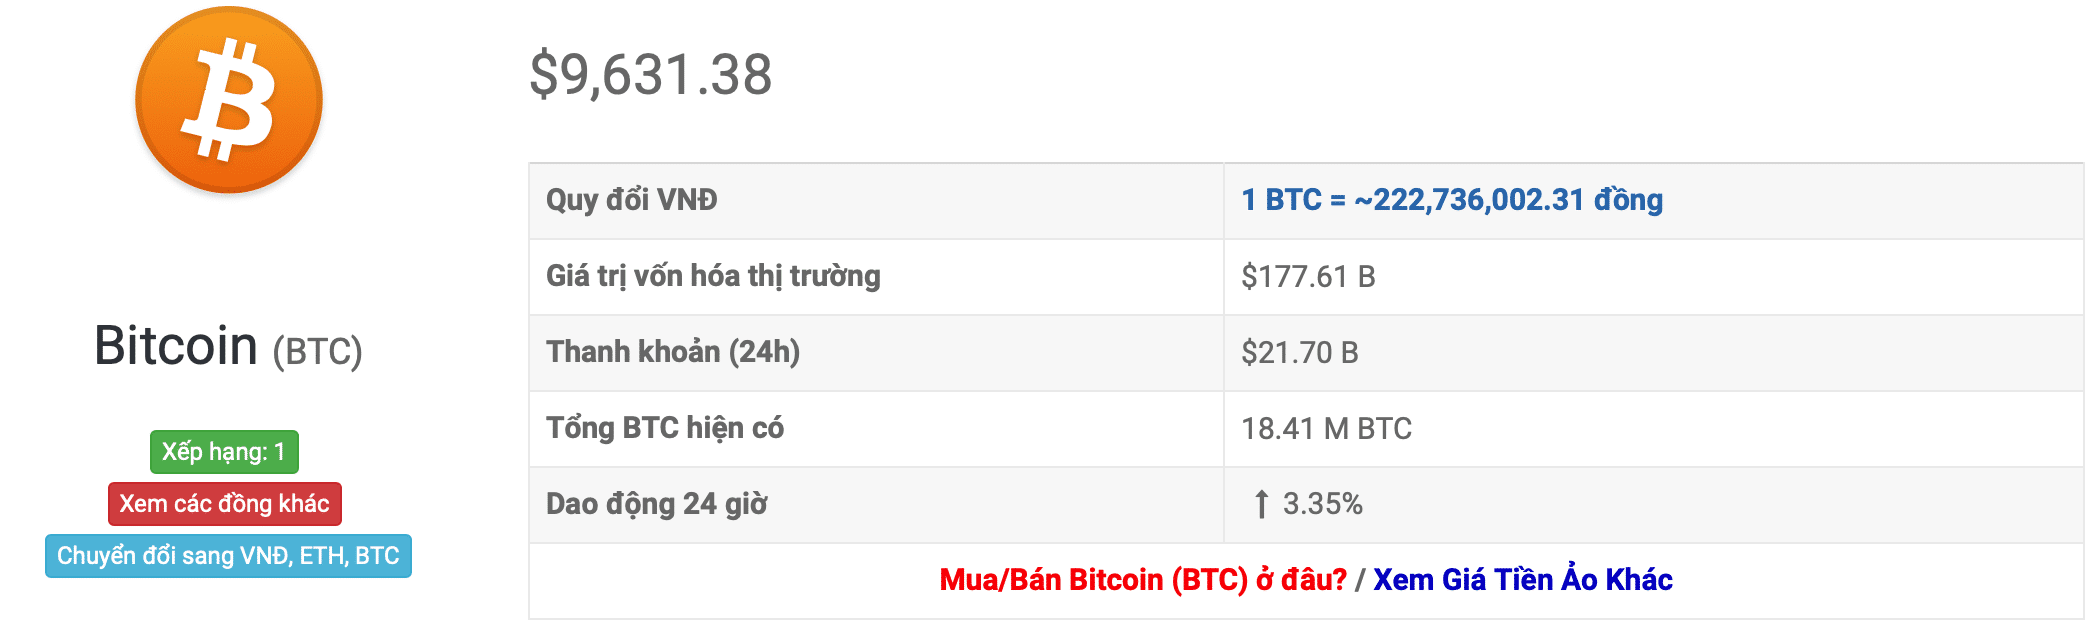 Směnný kurz bitcoinů za posledních 24 hodin